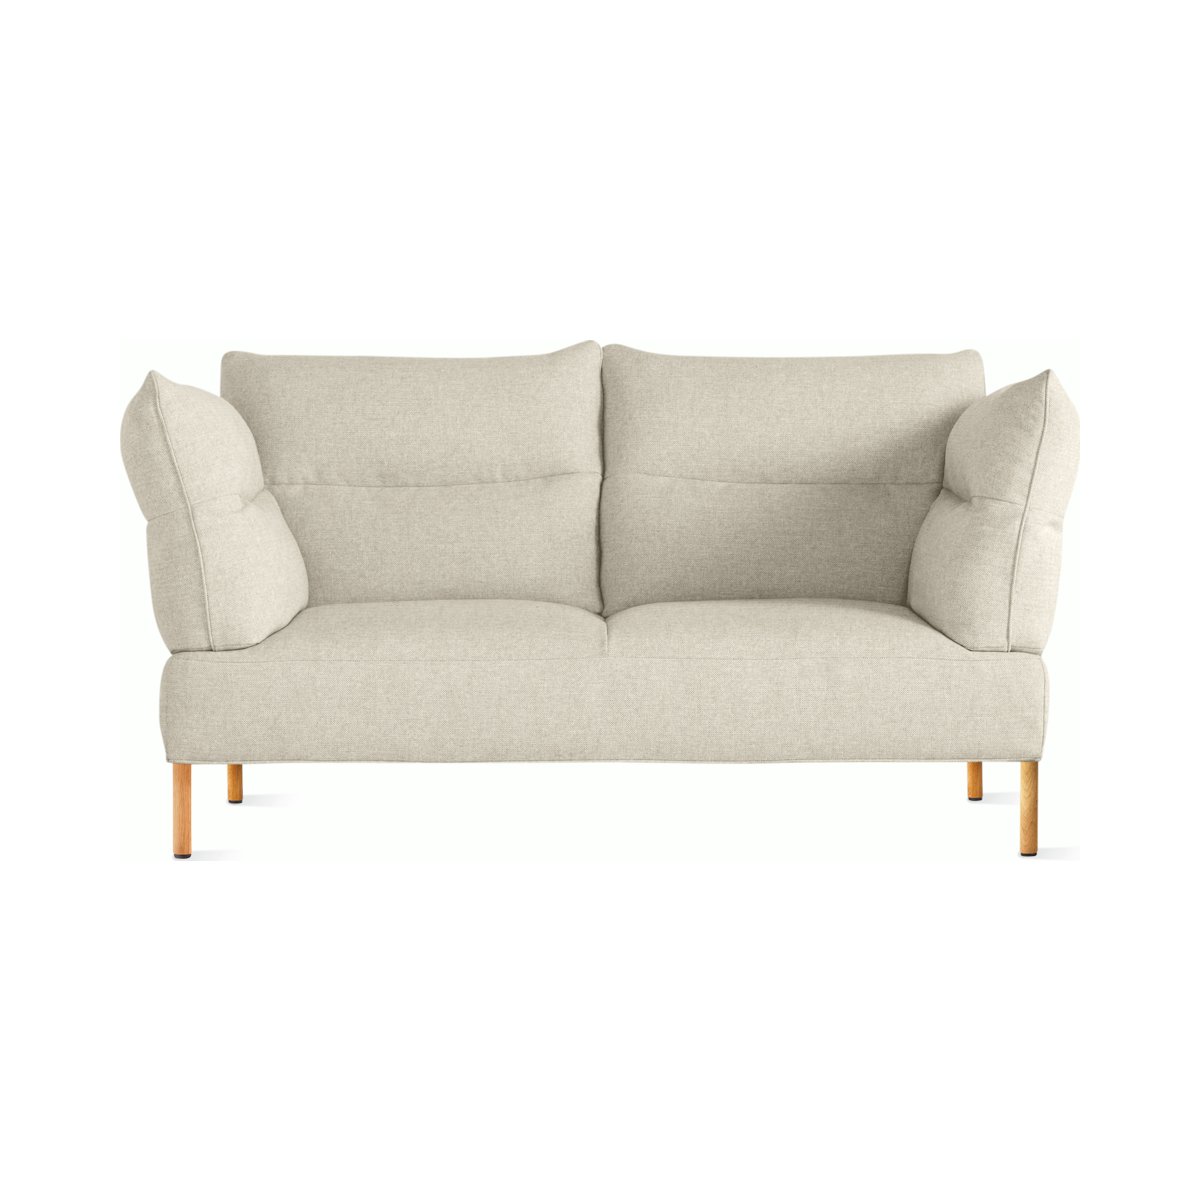 Pandarine 2-Seat Sofa